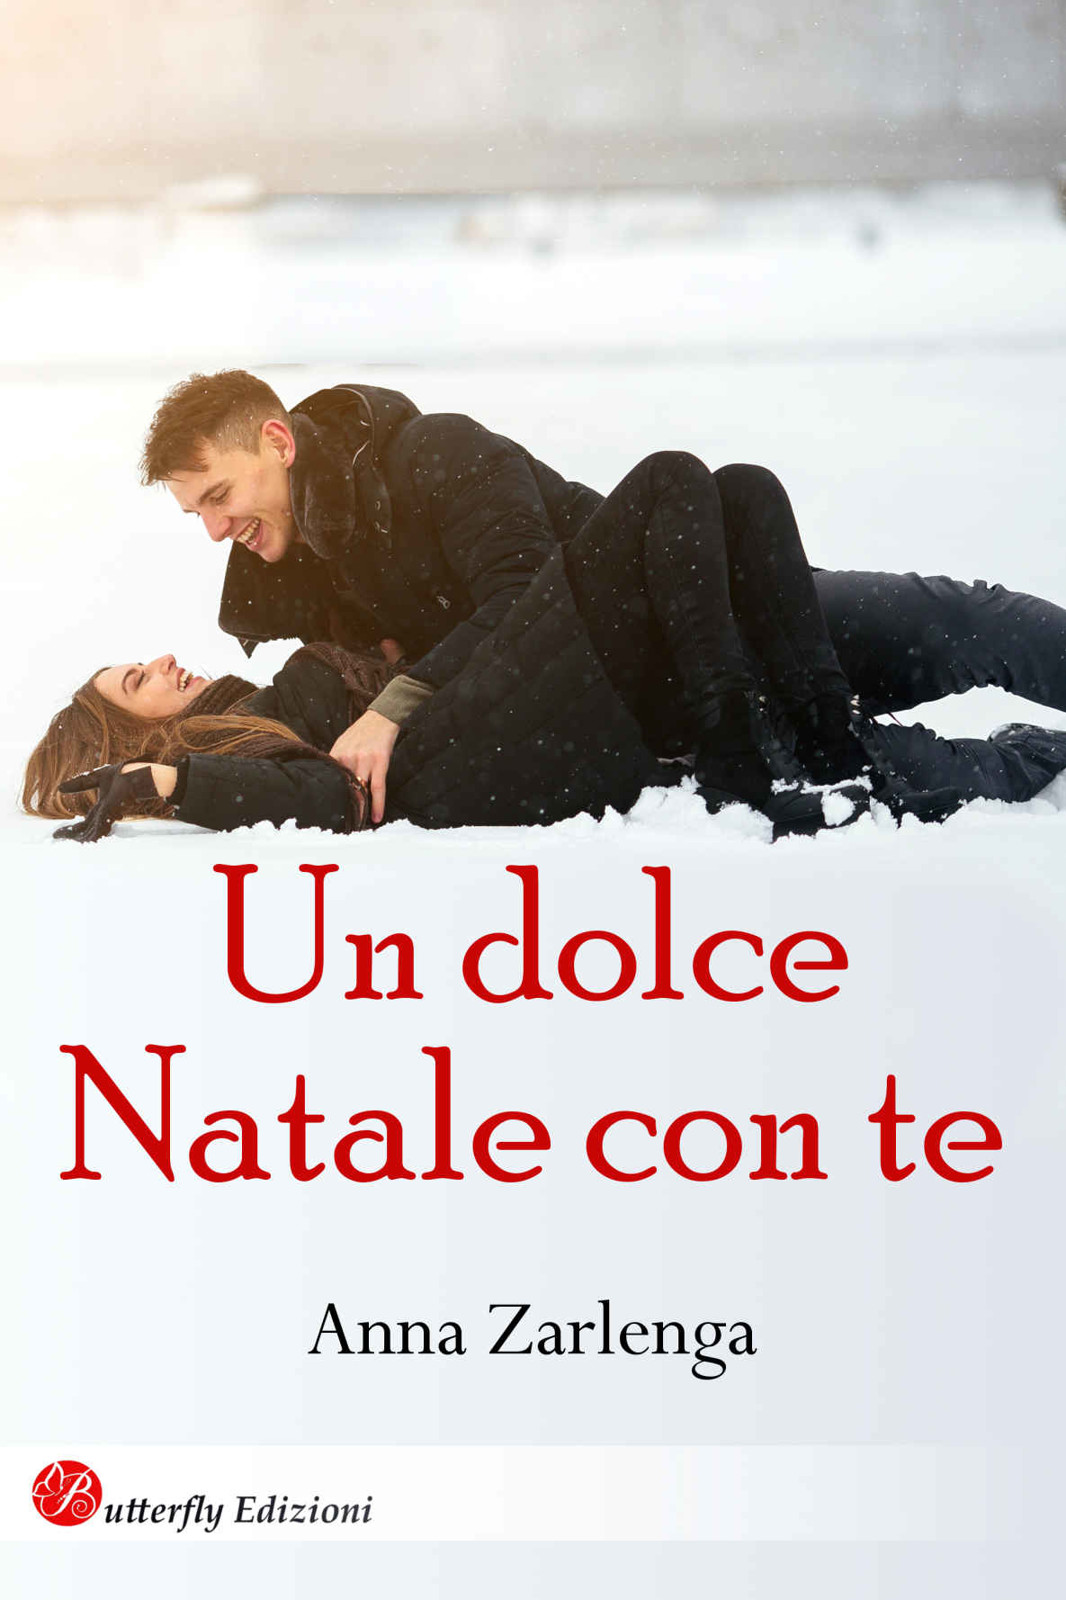 Un dolce Natale con te (Italian Edition)